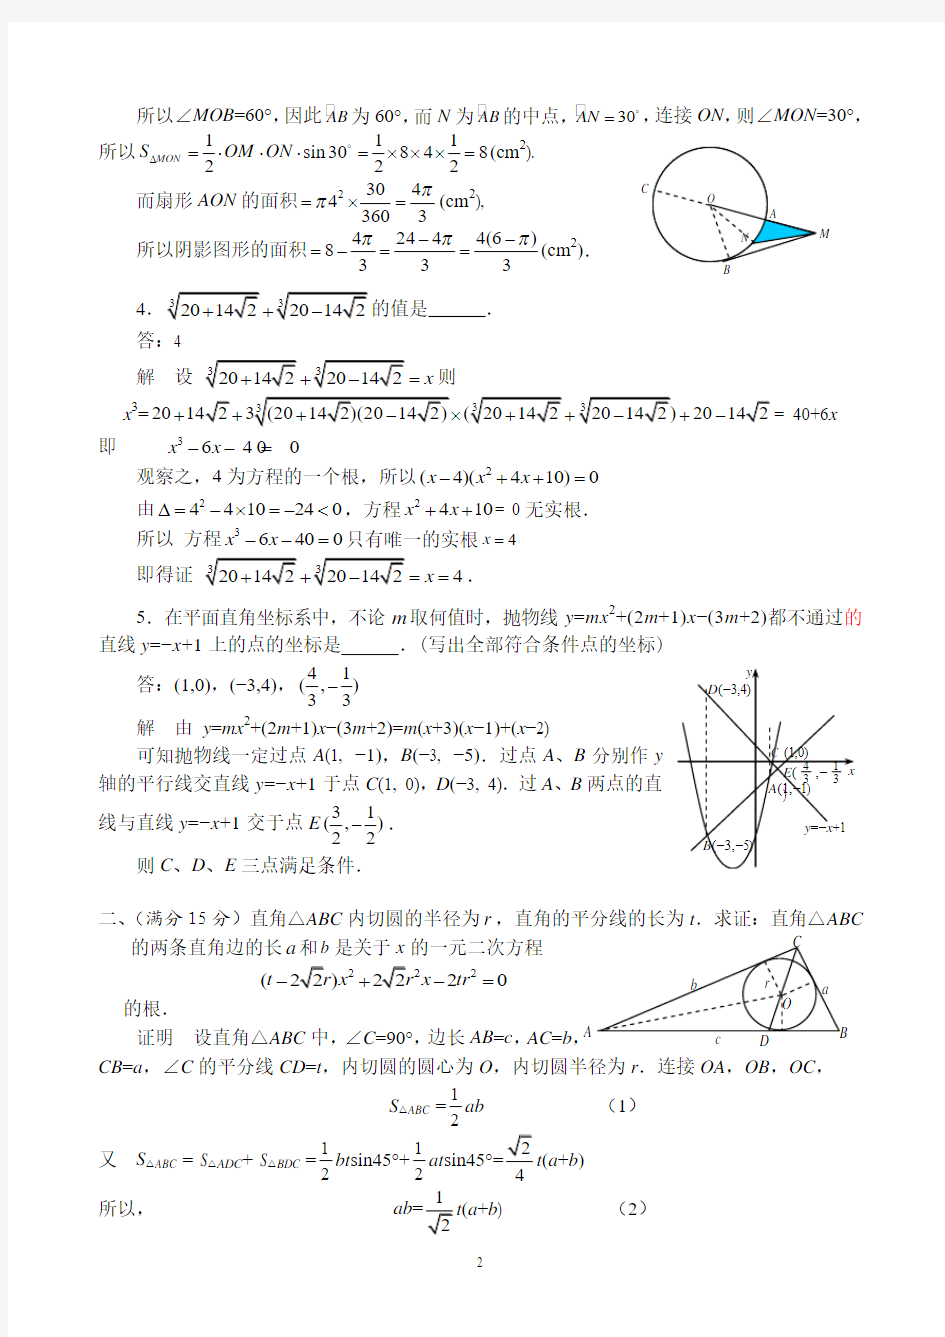 2009年北京市中学生数学竞赛高一年级复赛试题及解答